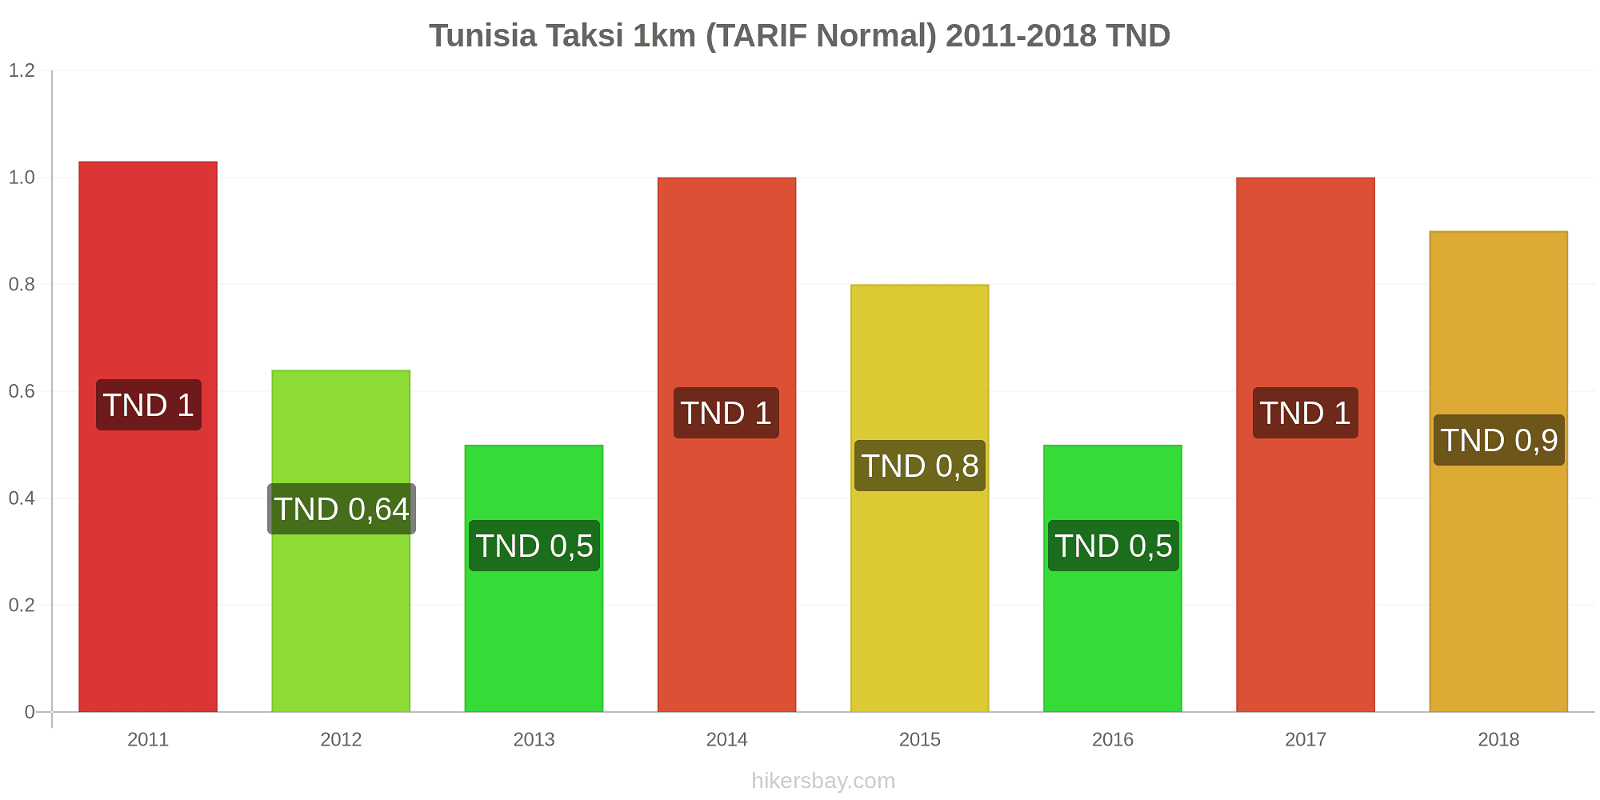 Tunisia perubahan harga Taksi 1km (Tarif Normal) hikersbay.com